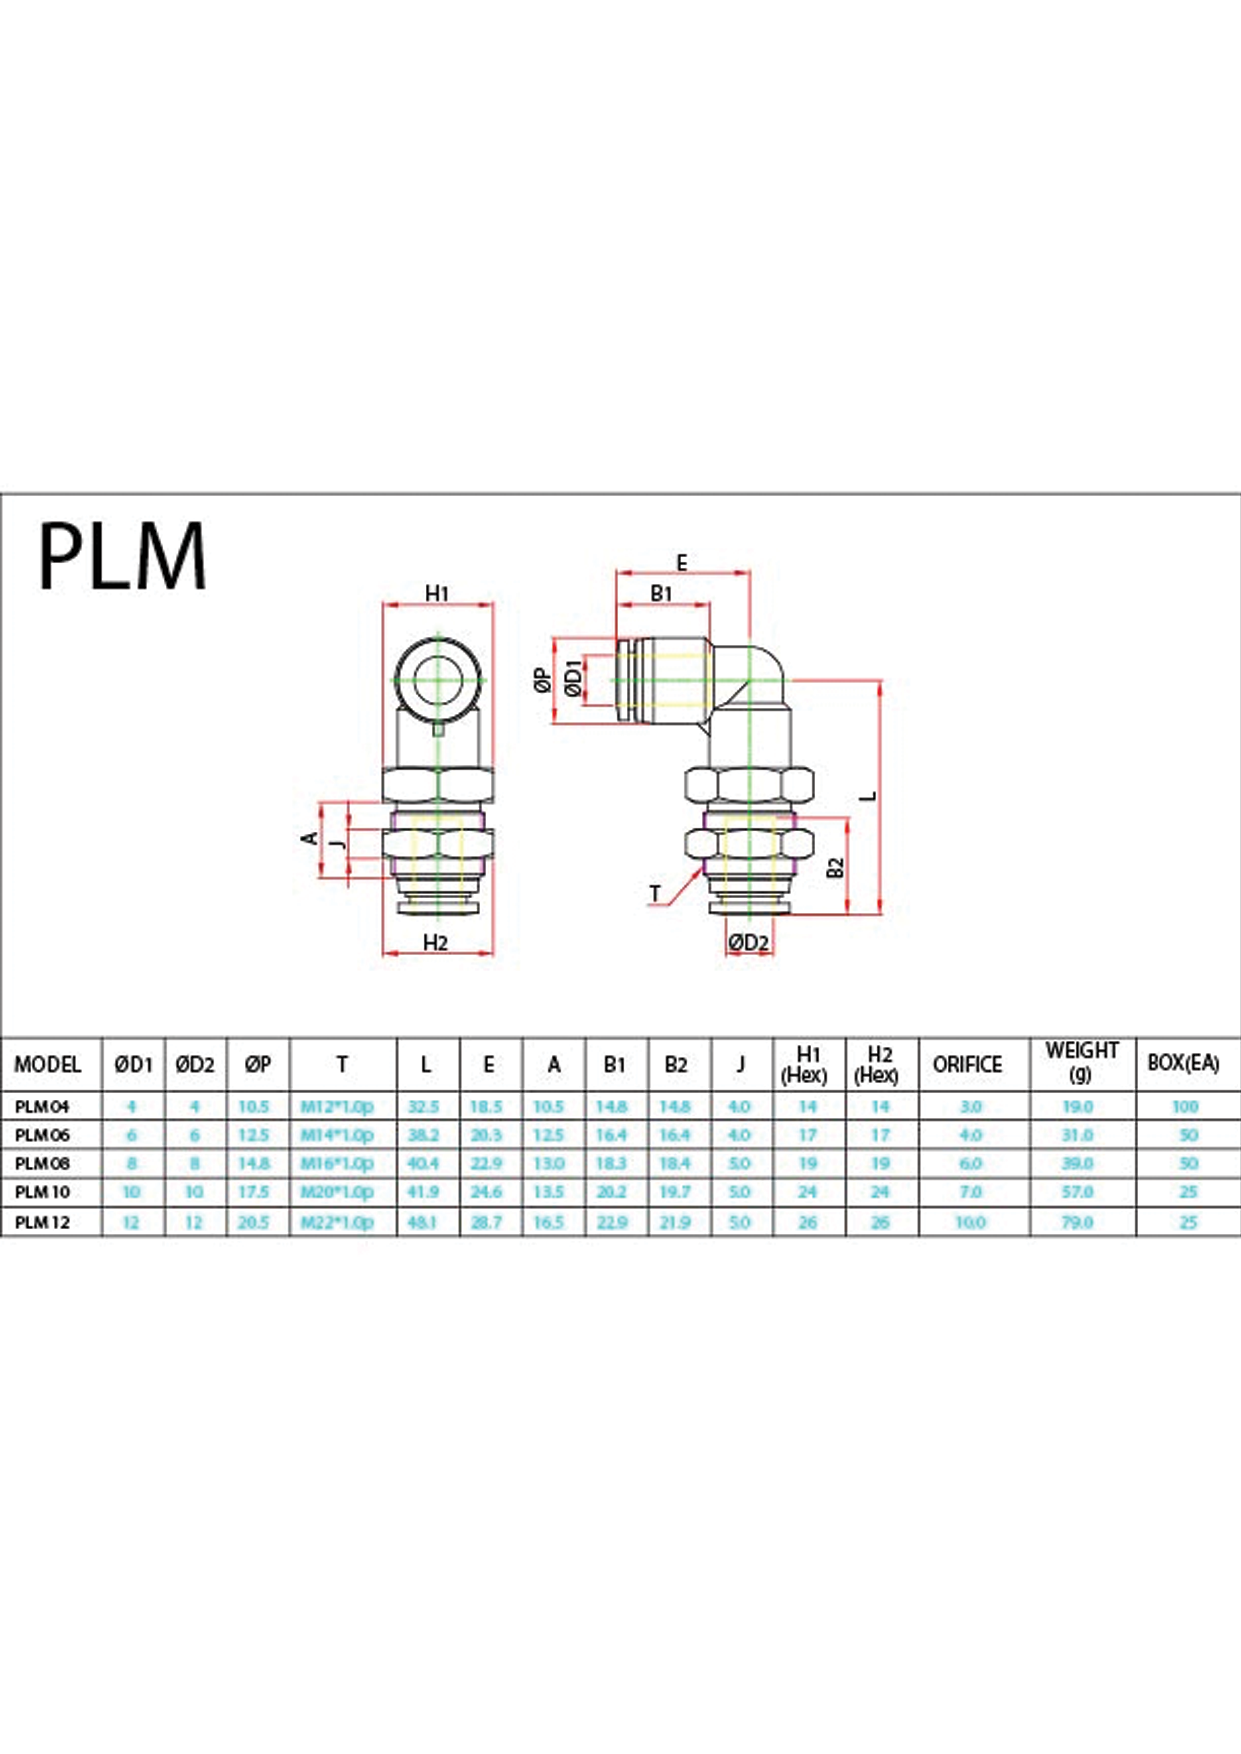 PLM (Metric) Data Sheet ( 108 KB )